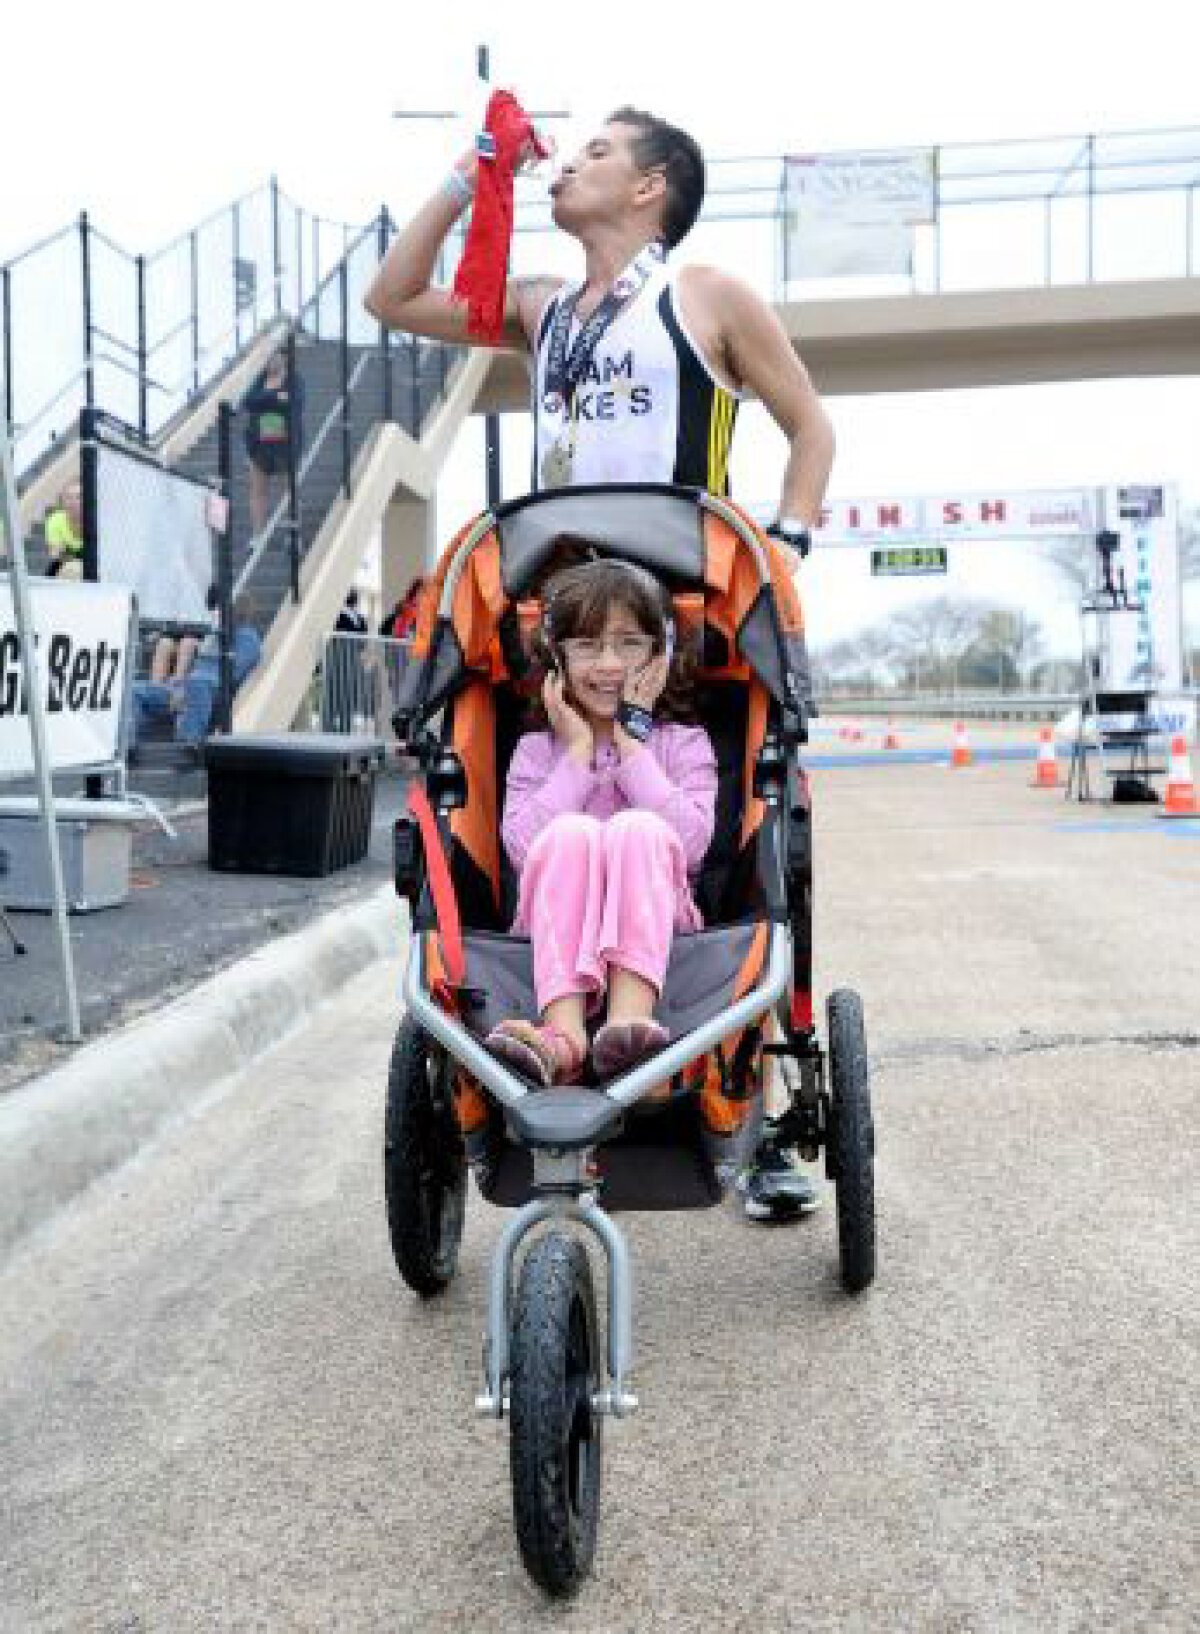 Aşa aleargă un tată » Bolnav de cancer, un bărbat a cîştigat maratonul împingînd şi căruciorul în care se afla fiica sa